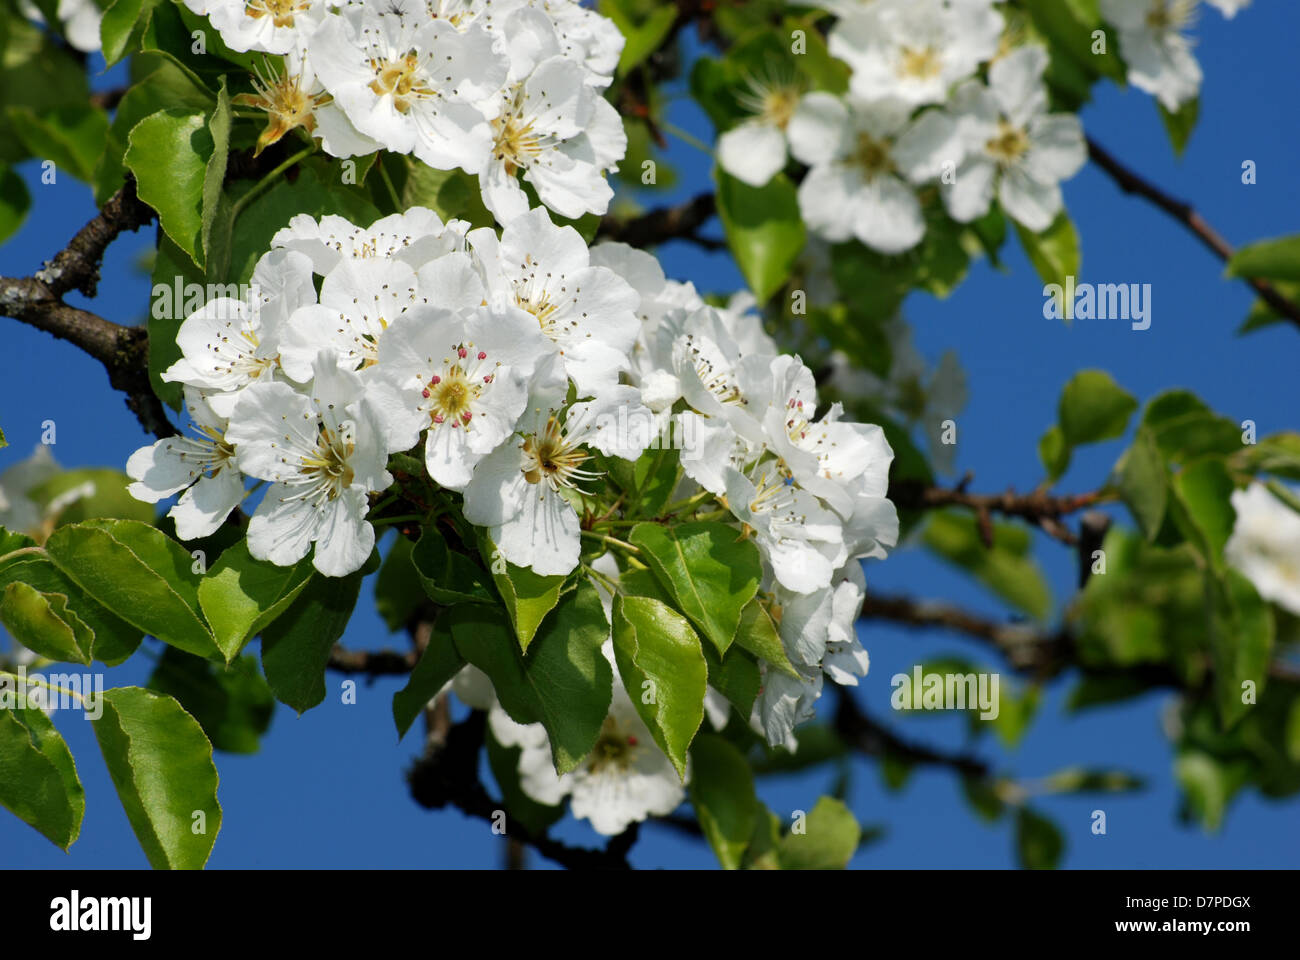 Birnbaum, Birnenbaum, The pear tree in blossom close-up view, Blueten des Birnbaumes in Nahansicht Stock Photo